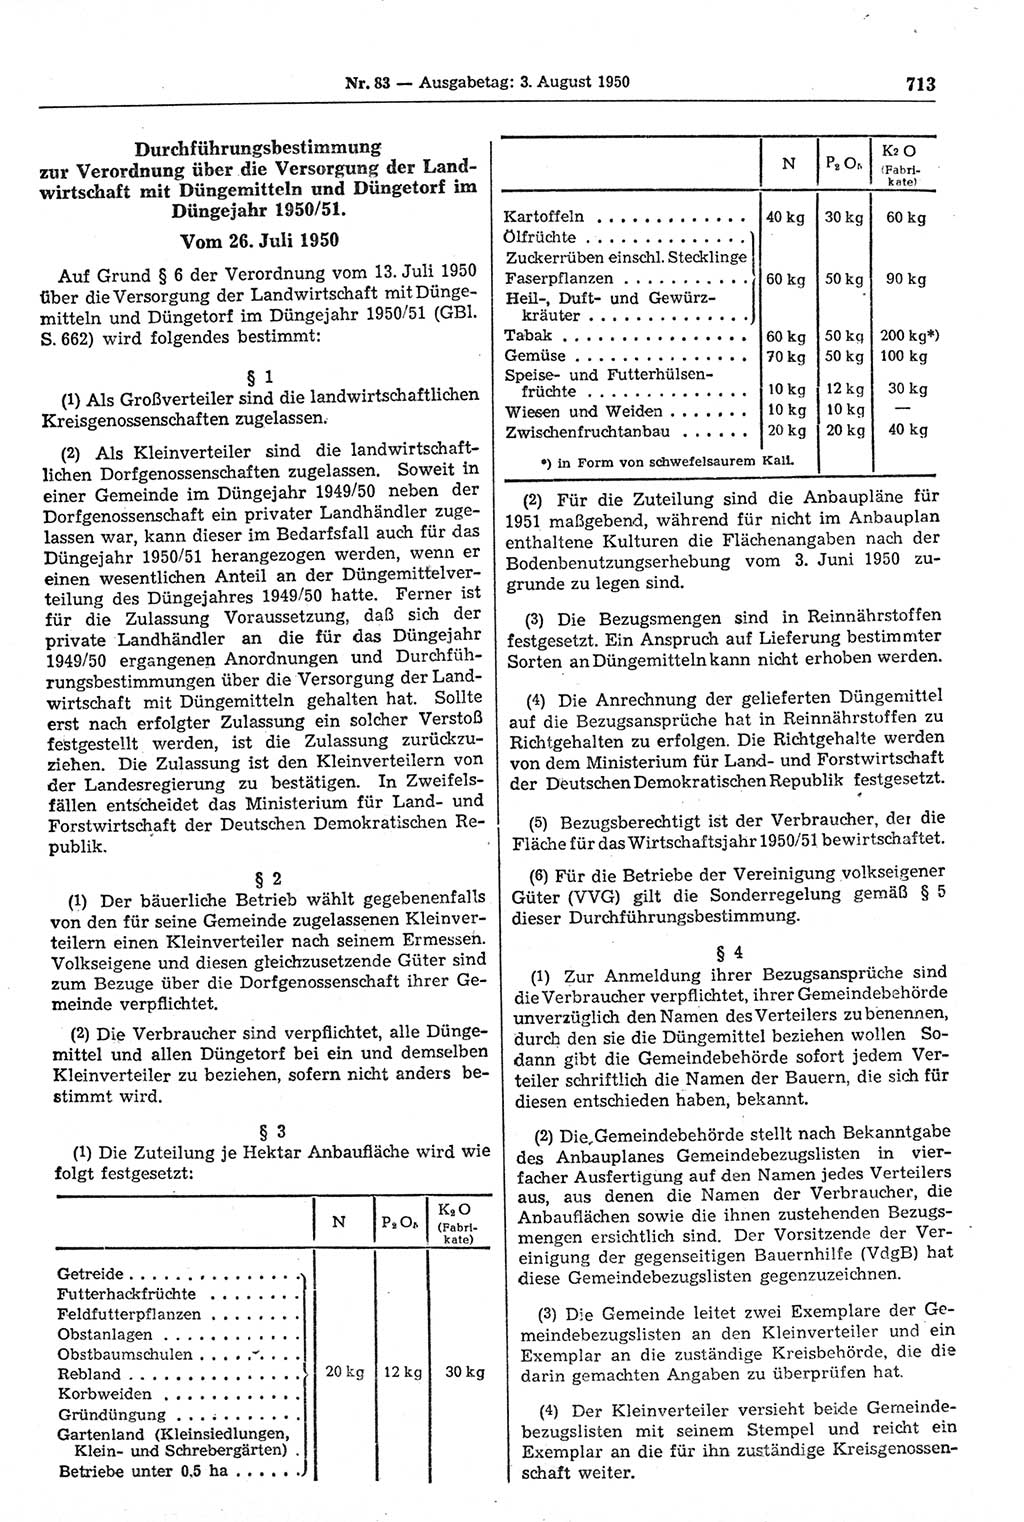 Gesetzblatt (GBl.) der Deutschen Demokratischen Republik (DDR) 1950, Seite 713 (GBl. DDR 1950, S. 713)